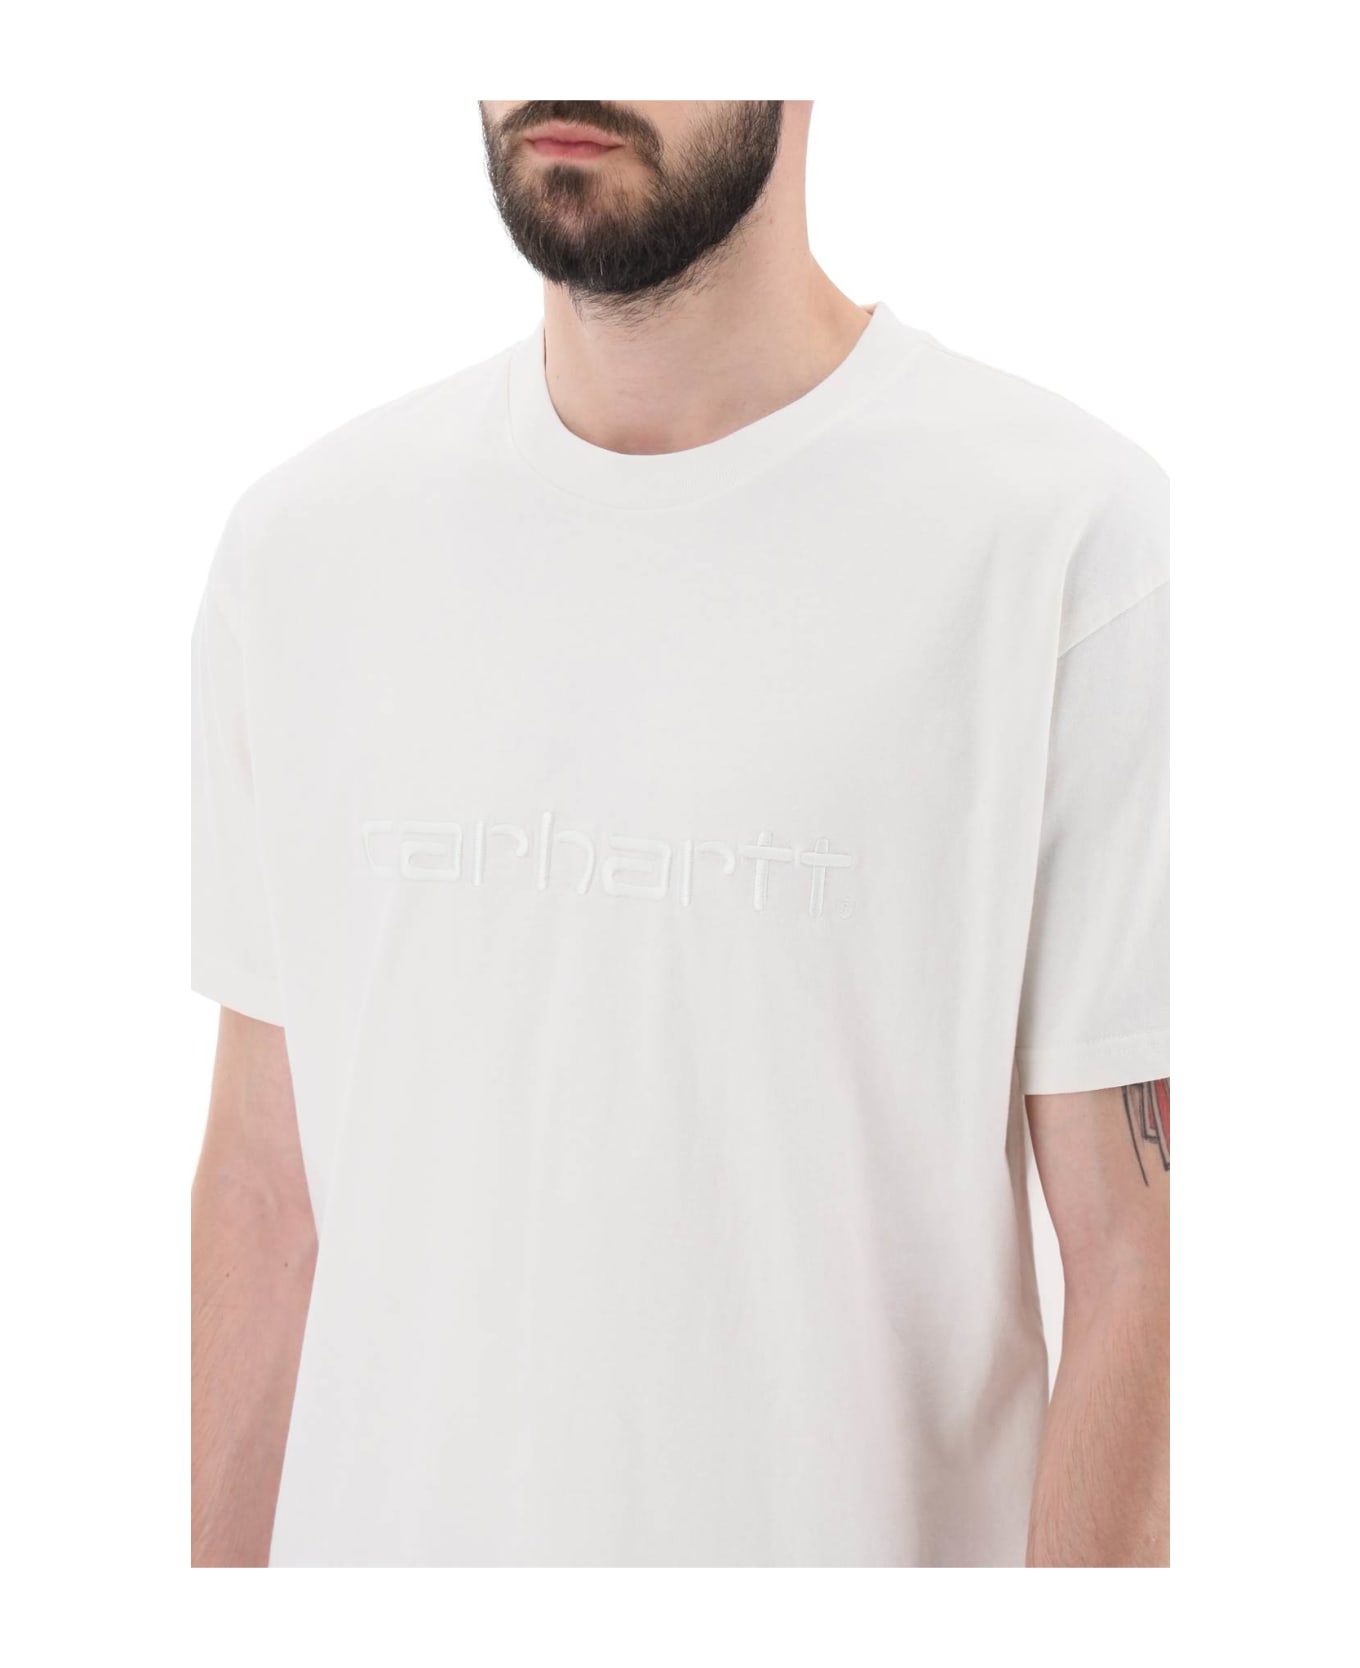 Carhartt Duster T-shirt - WHITE (White)